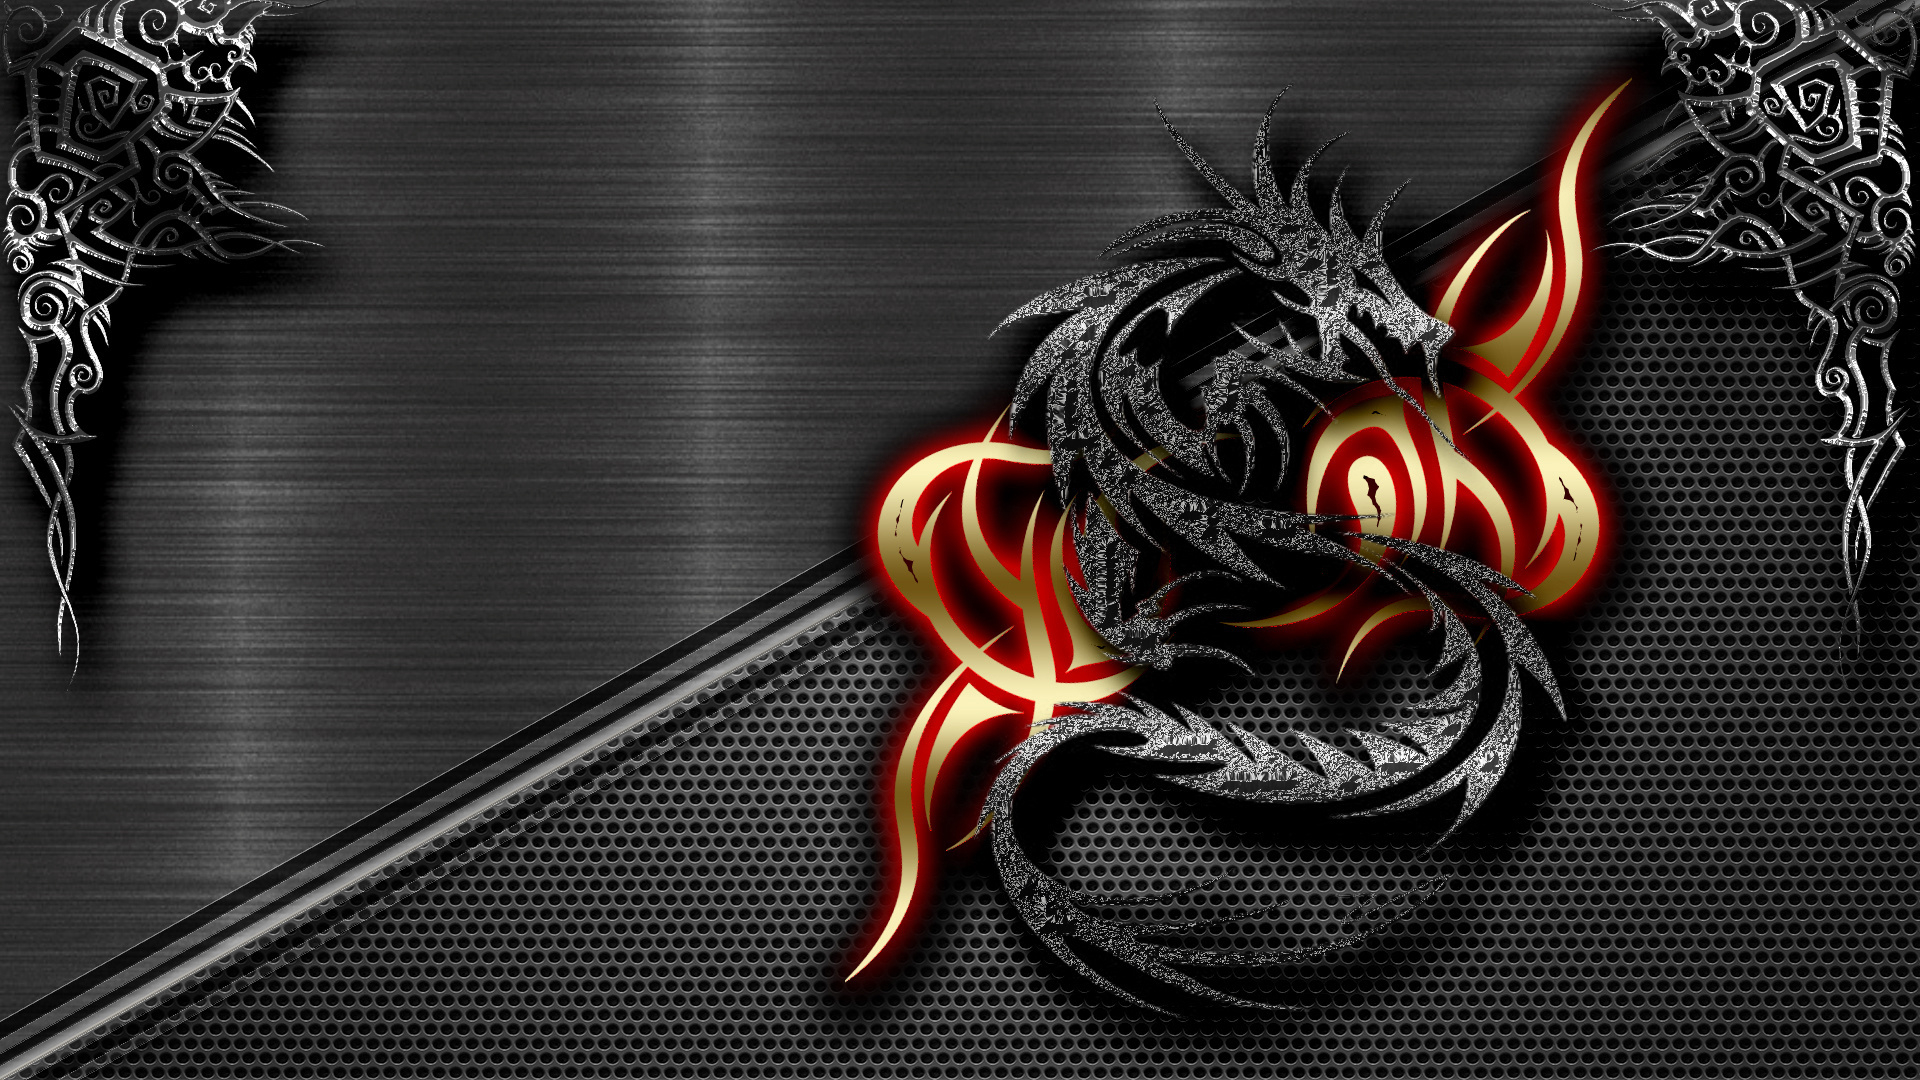  Black  Dragon  Wallpaper  Desktop WallpaperSafari